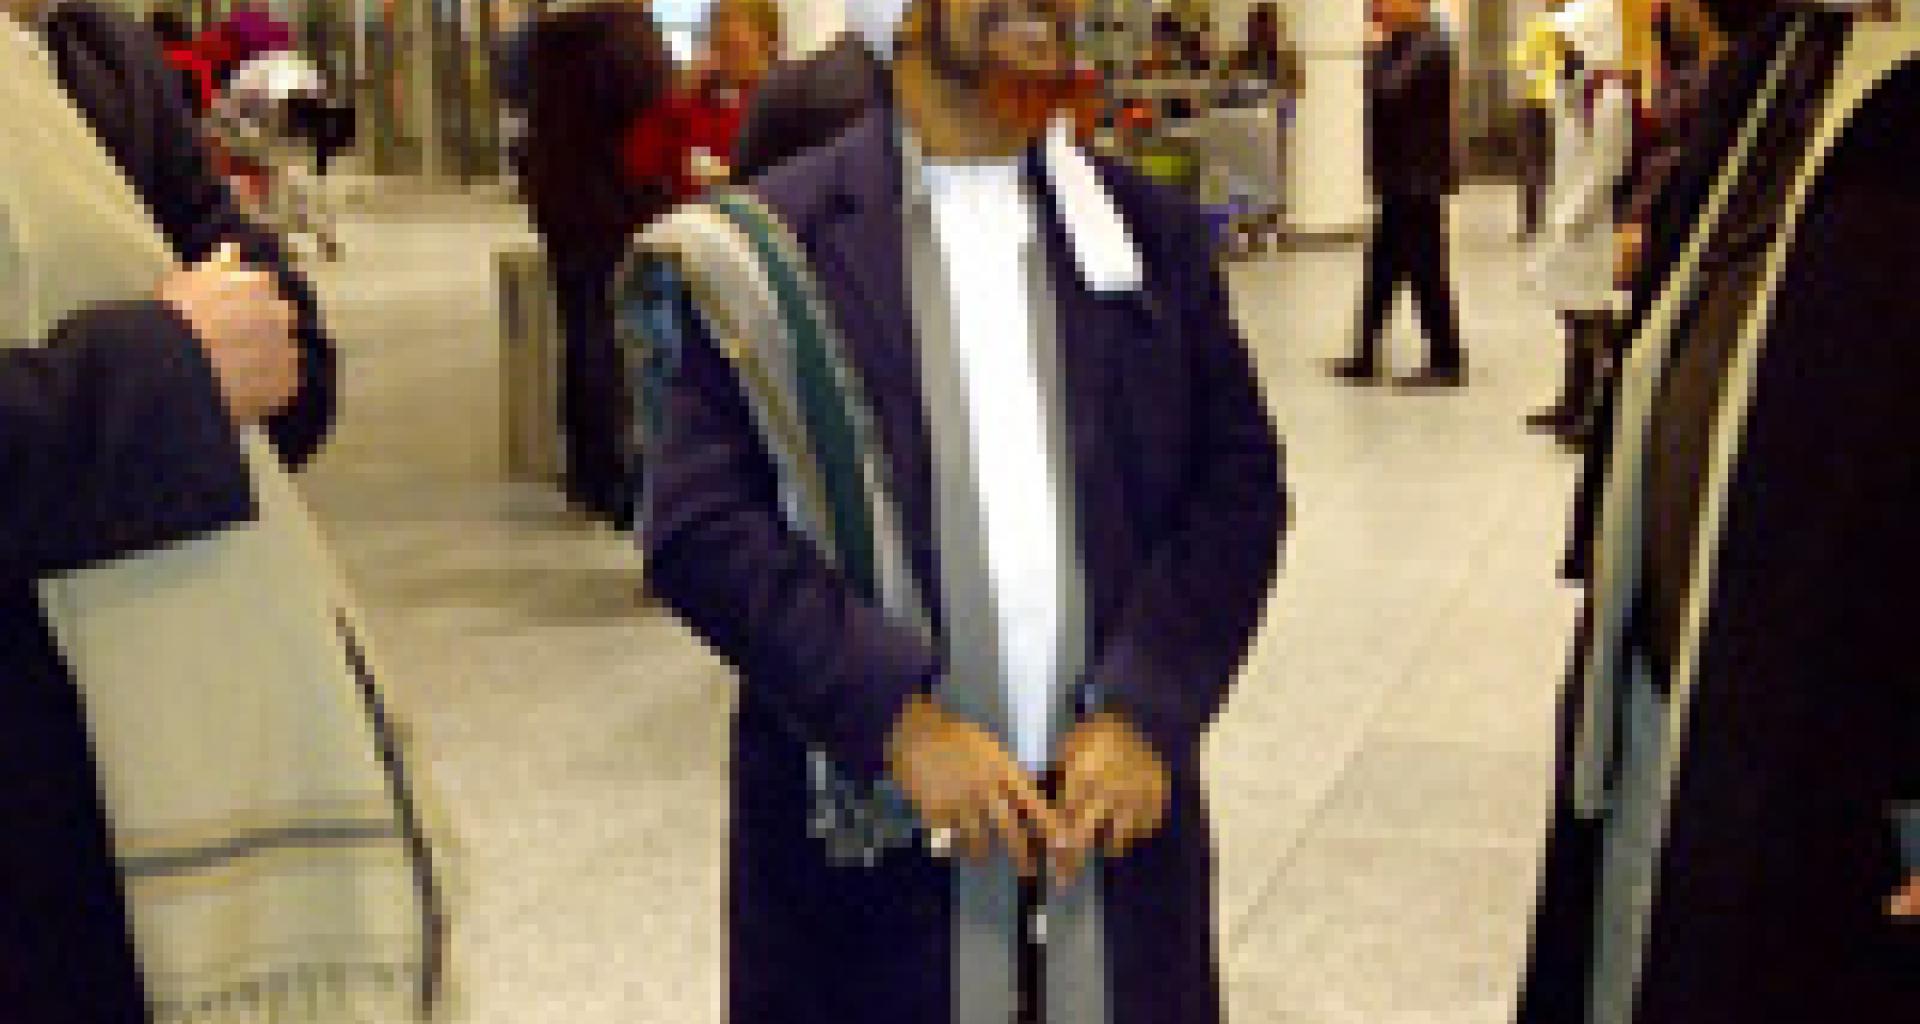 الحبيب عمر لحظة وصوله مطار مونتريال في كندا مساء الثلاثاء